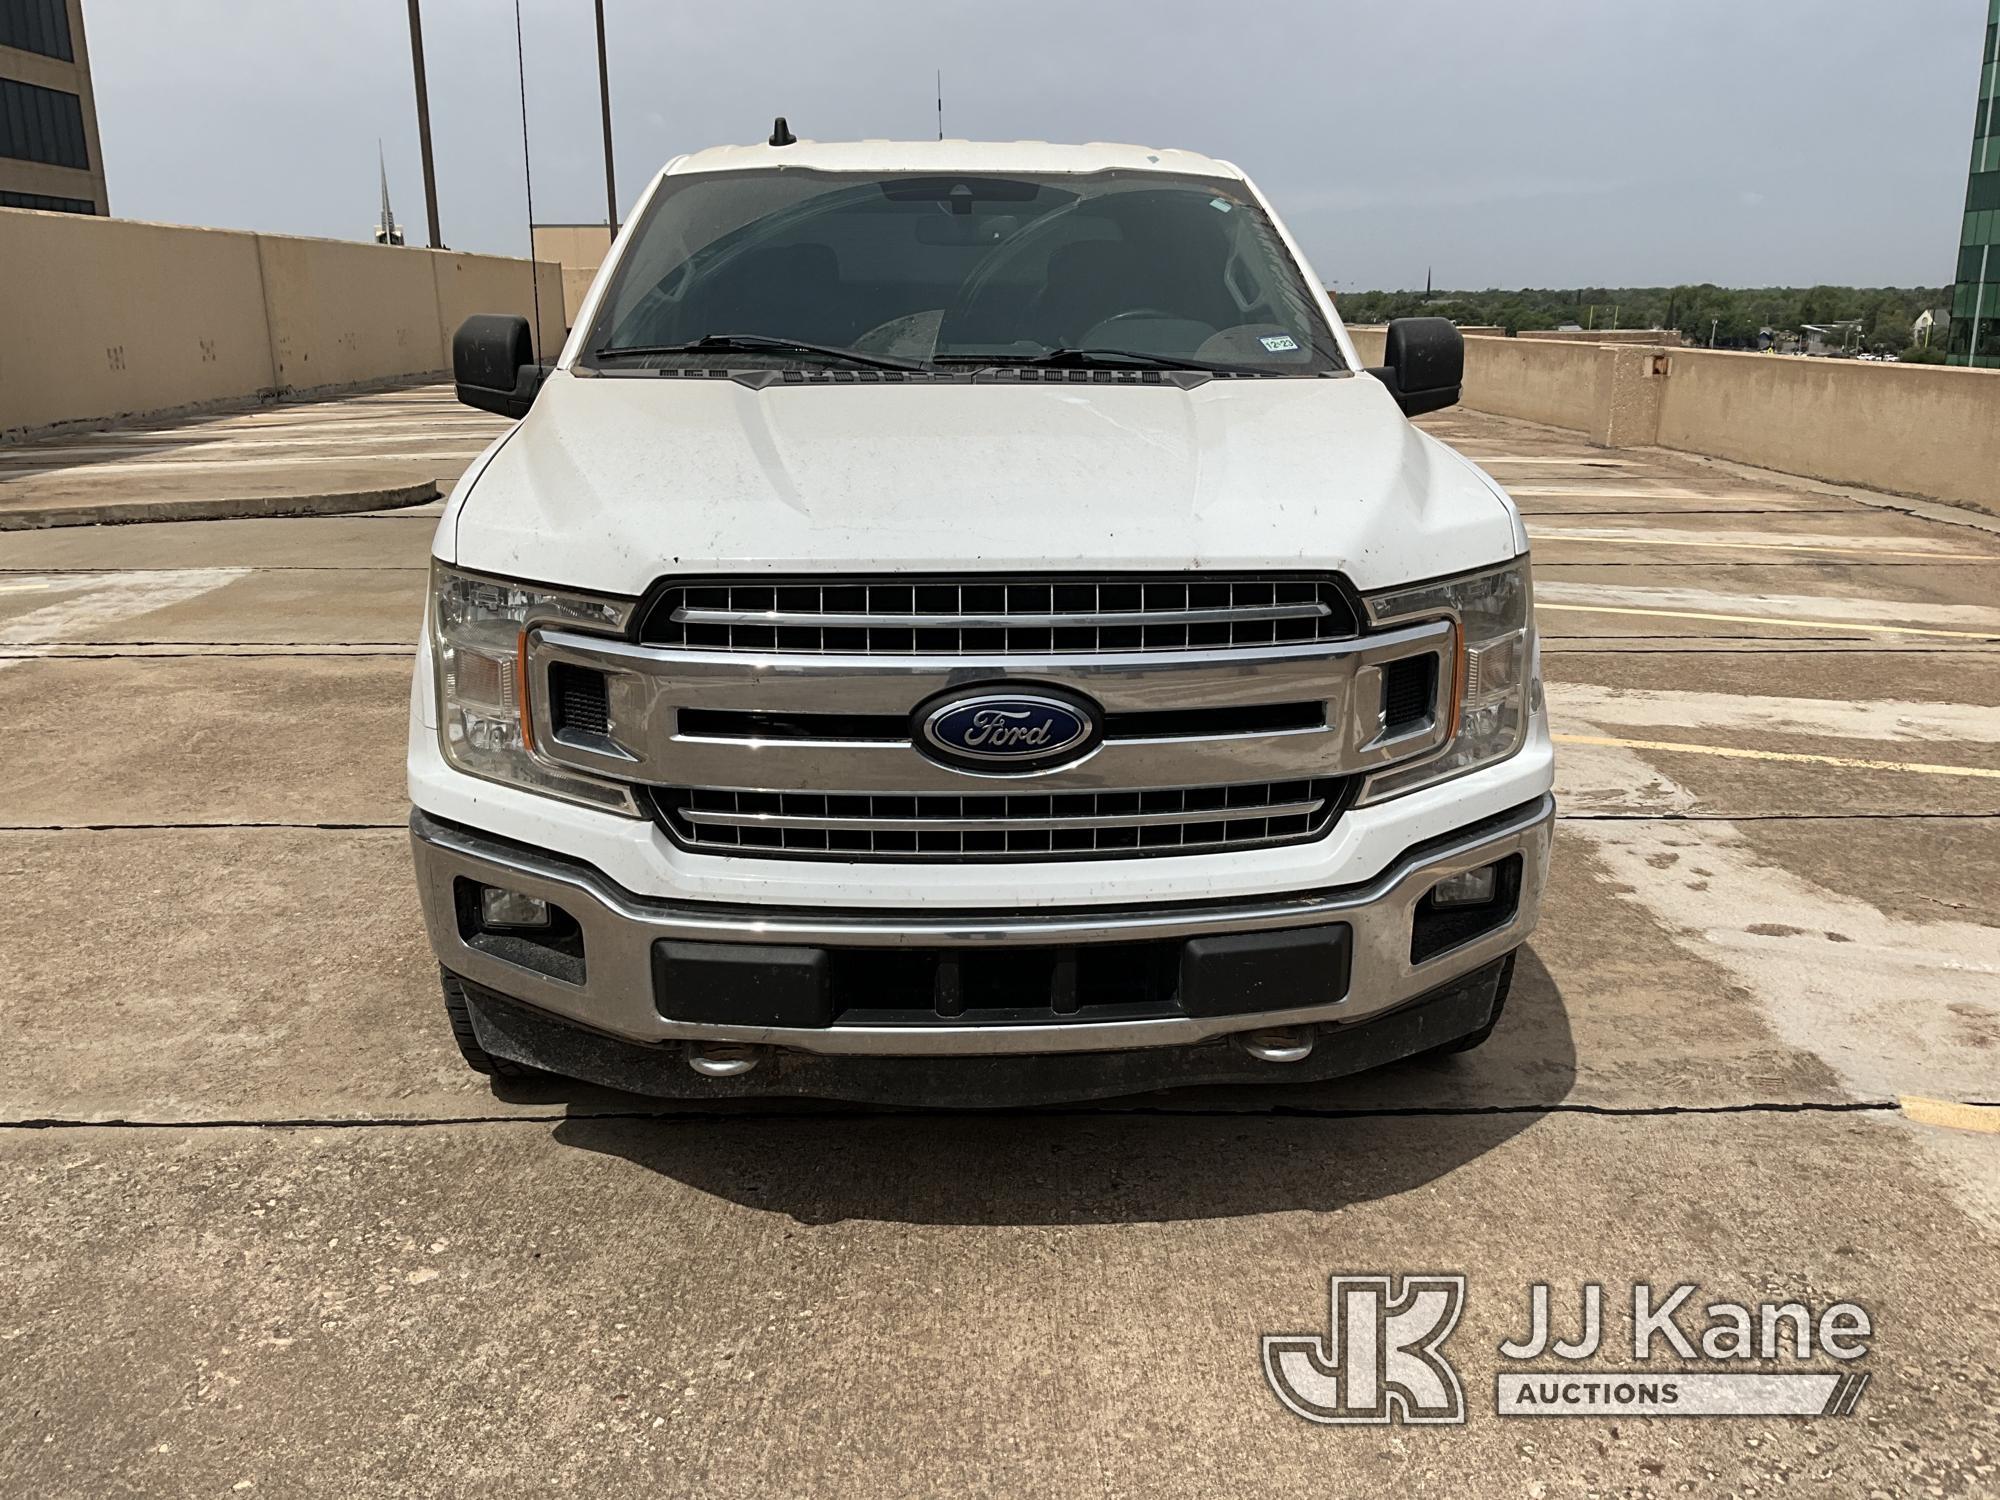 (Midland, TX) 2019 Ford F150 4x4 Crew-Cab Pickup Truck Runs & Moves) (Jump To Start, Per Seller, Uni